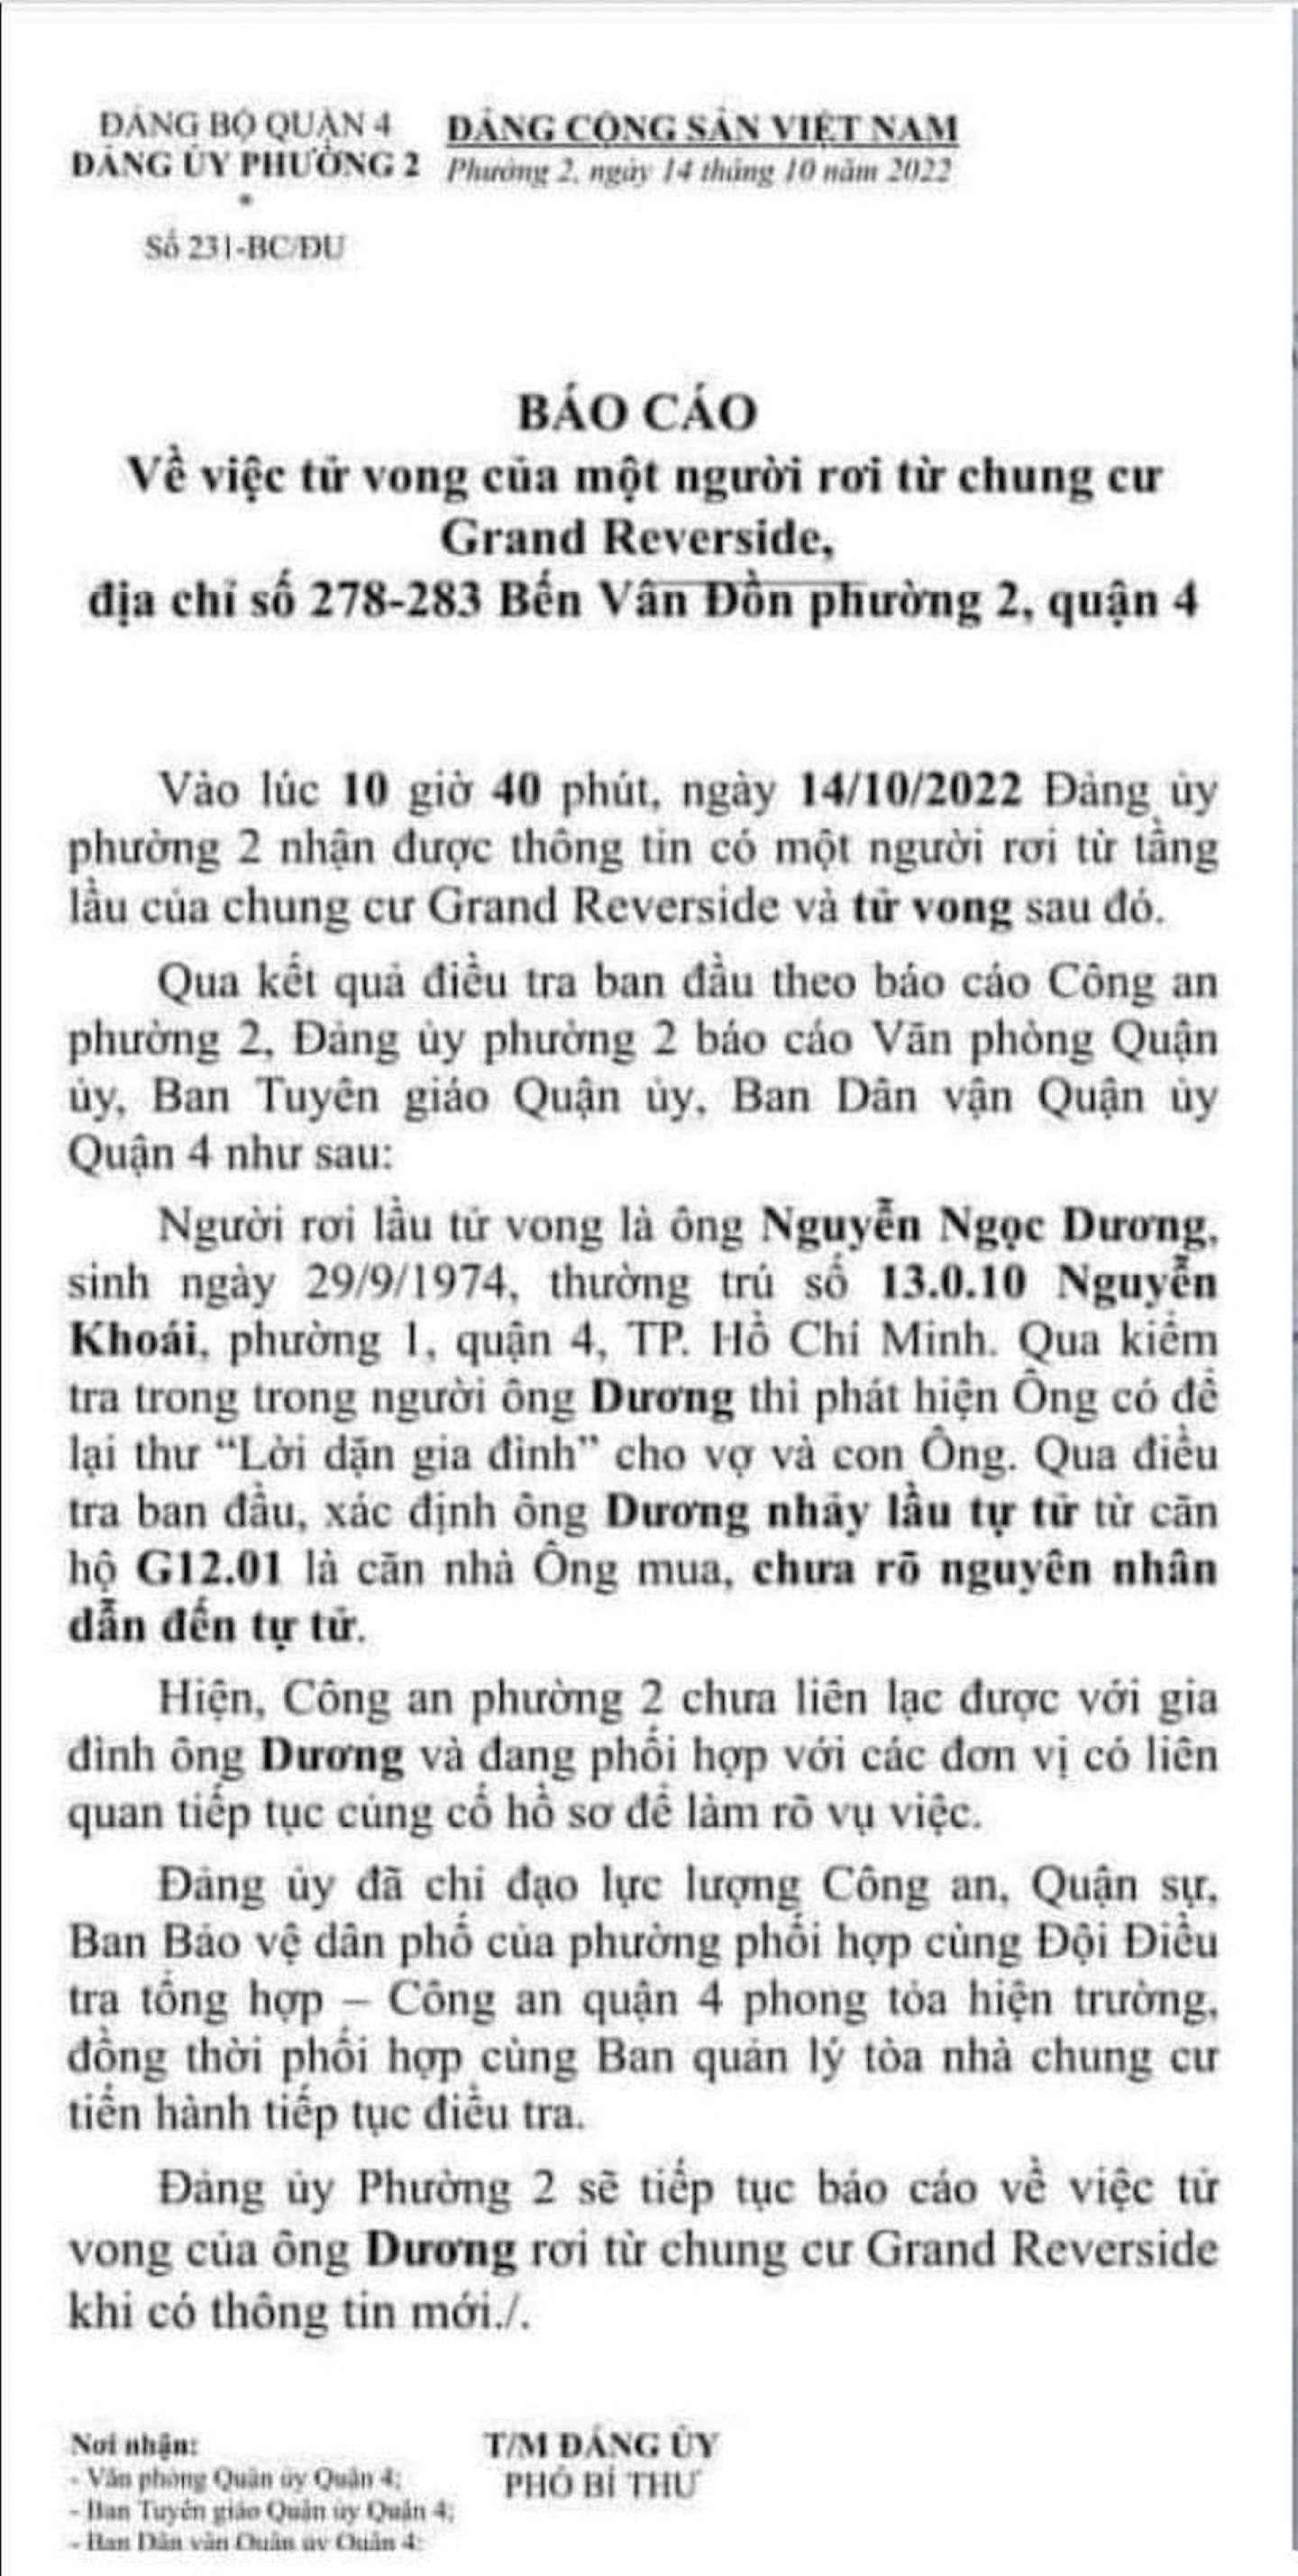 張美蘭公司旗下地產公司高層阮玉陽（Nguyen Ngoc Duong）亦在同月14日疑跳樓自殺身亡，更留有遺書。有越南報章更刊登疑為阮玉陽的訃告及遺書。（Nguoi Viet News）